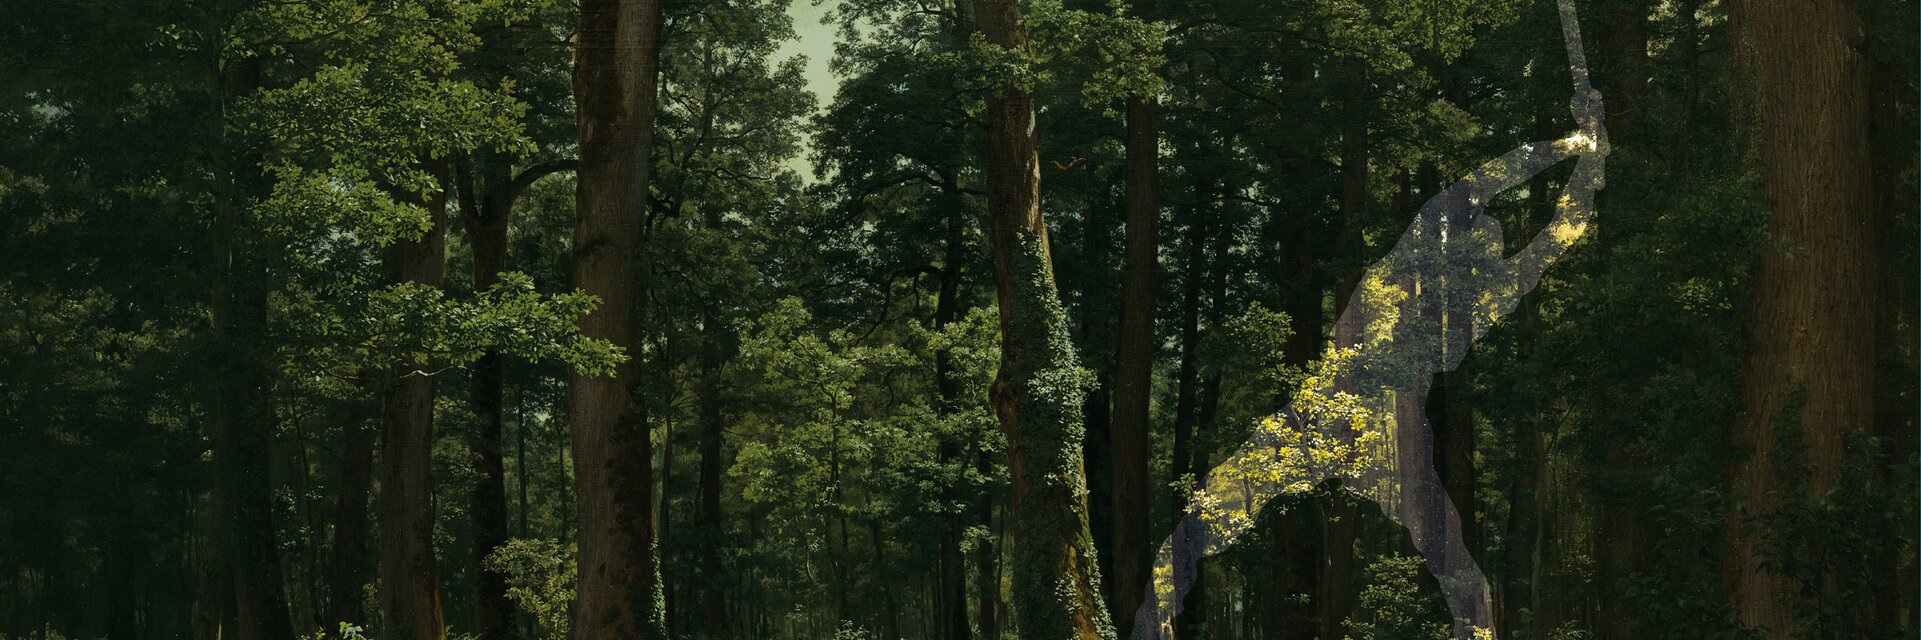 Key-Visual de l'exposition "Dans la forêt